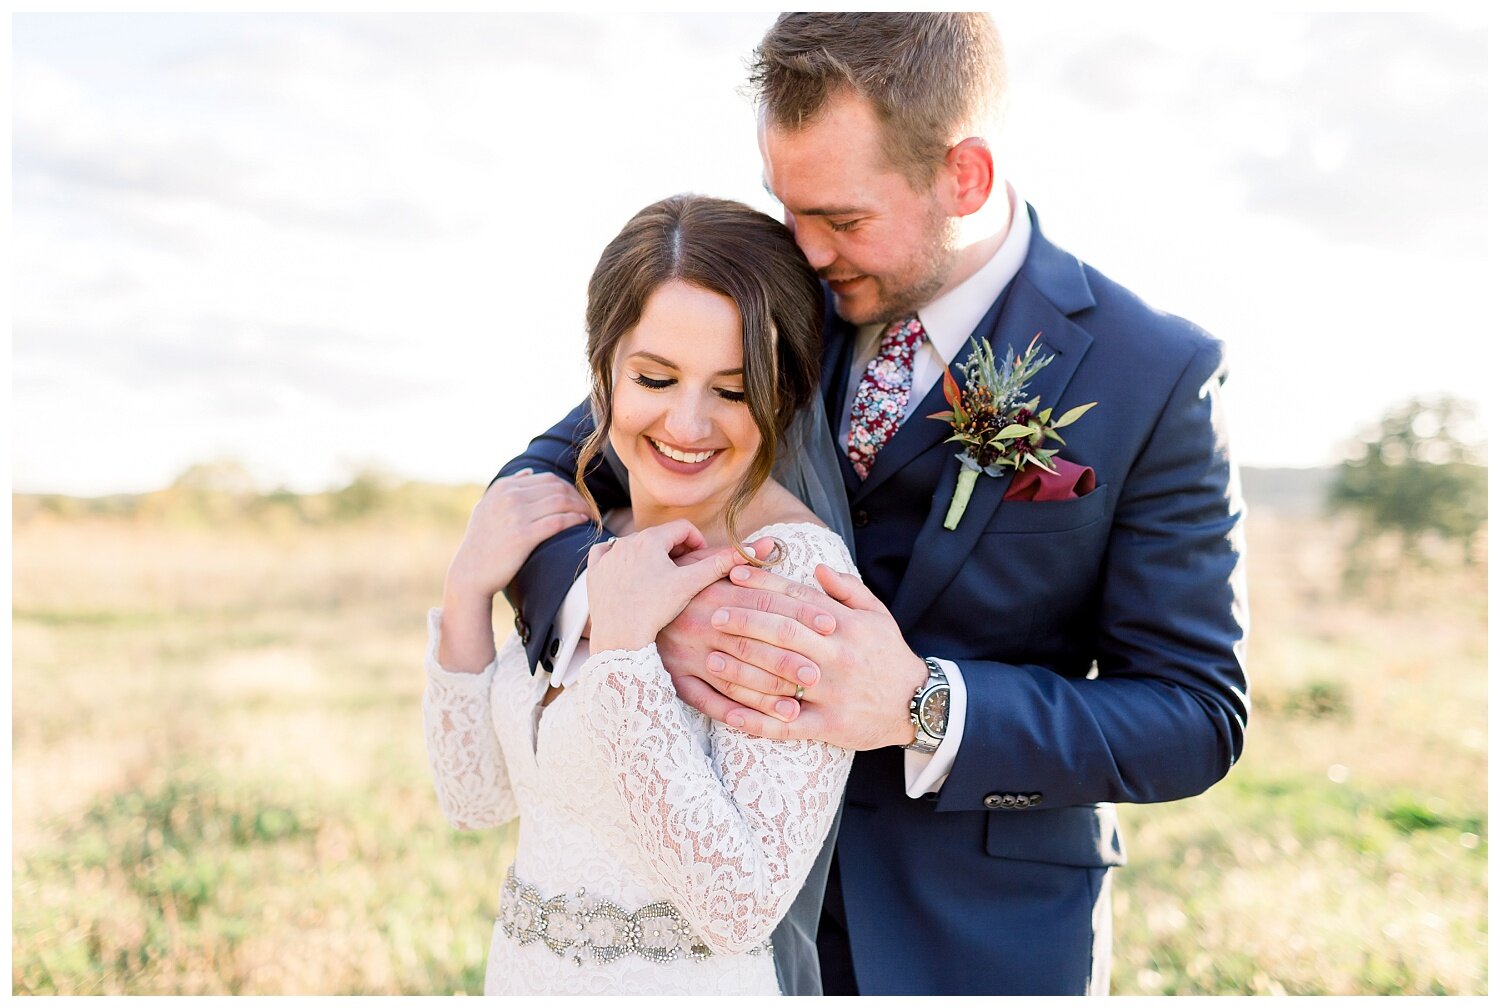 Missouri based wedding and engagement photographer